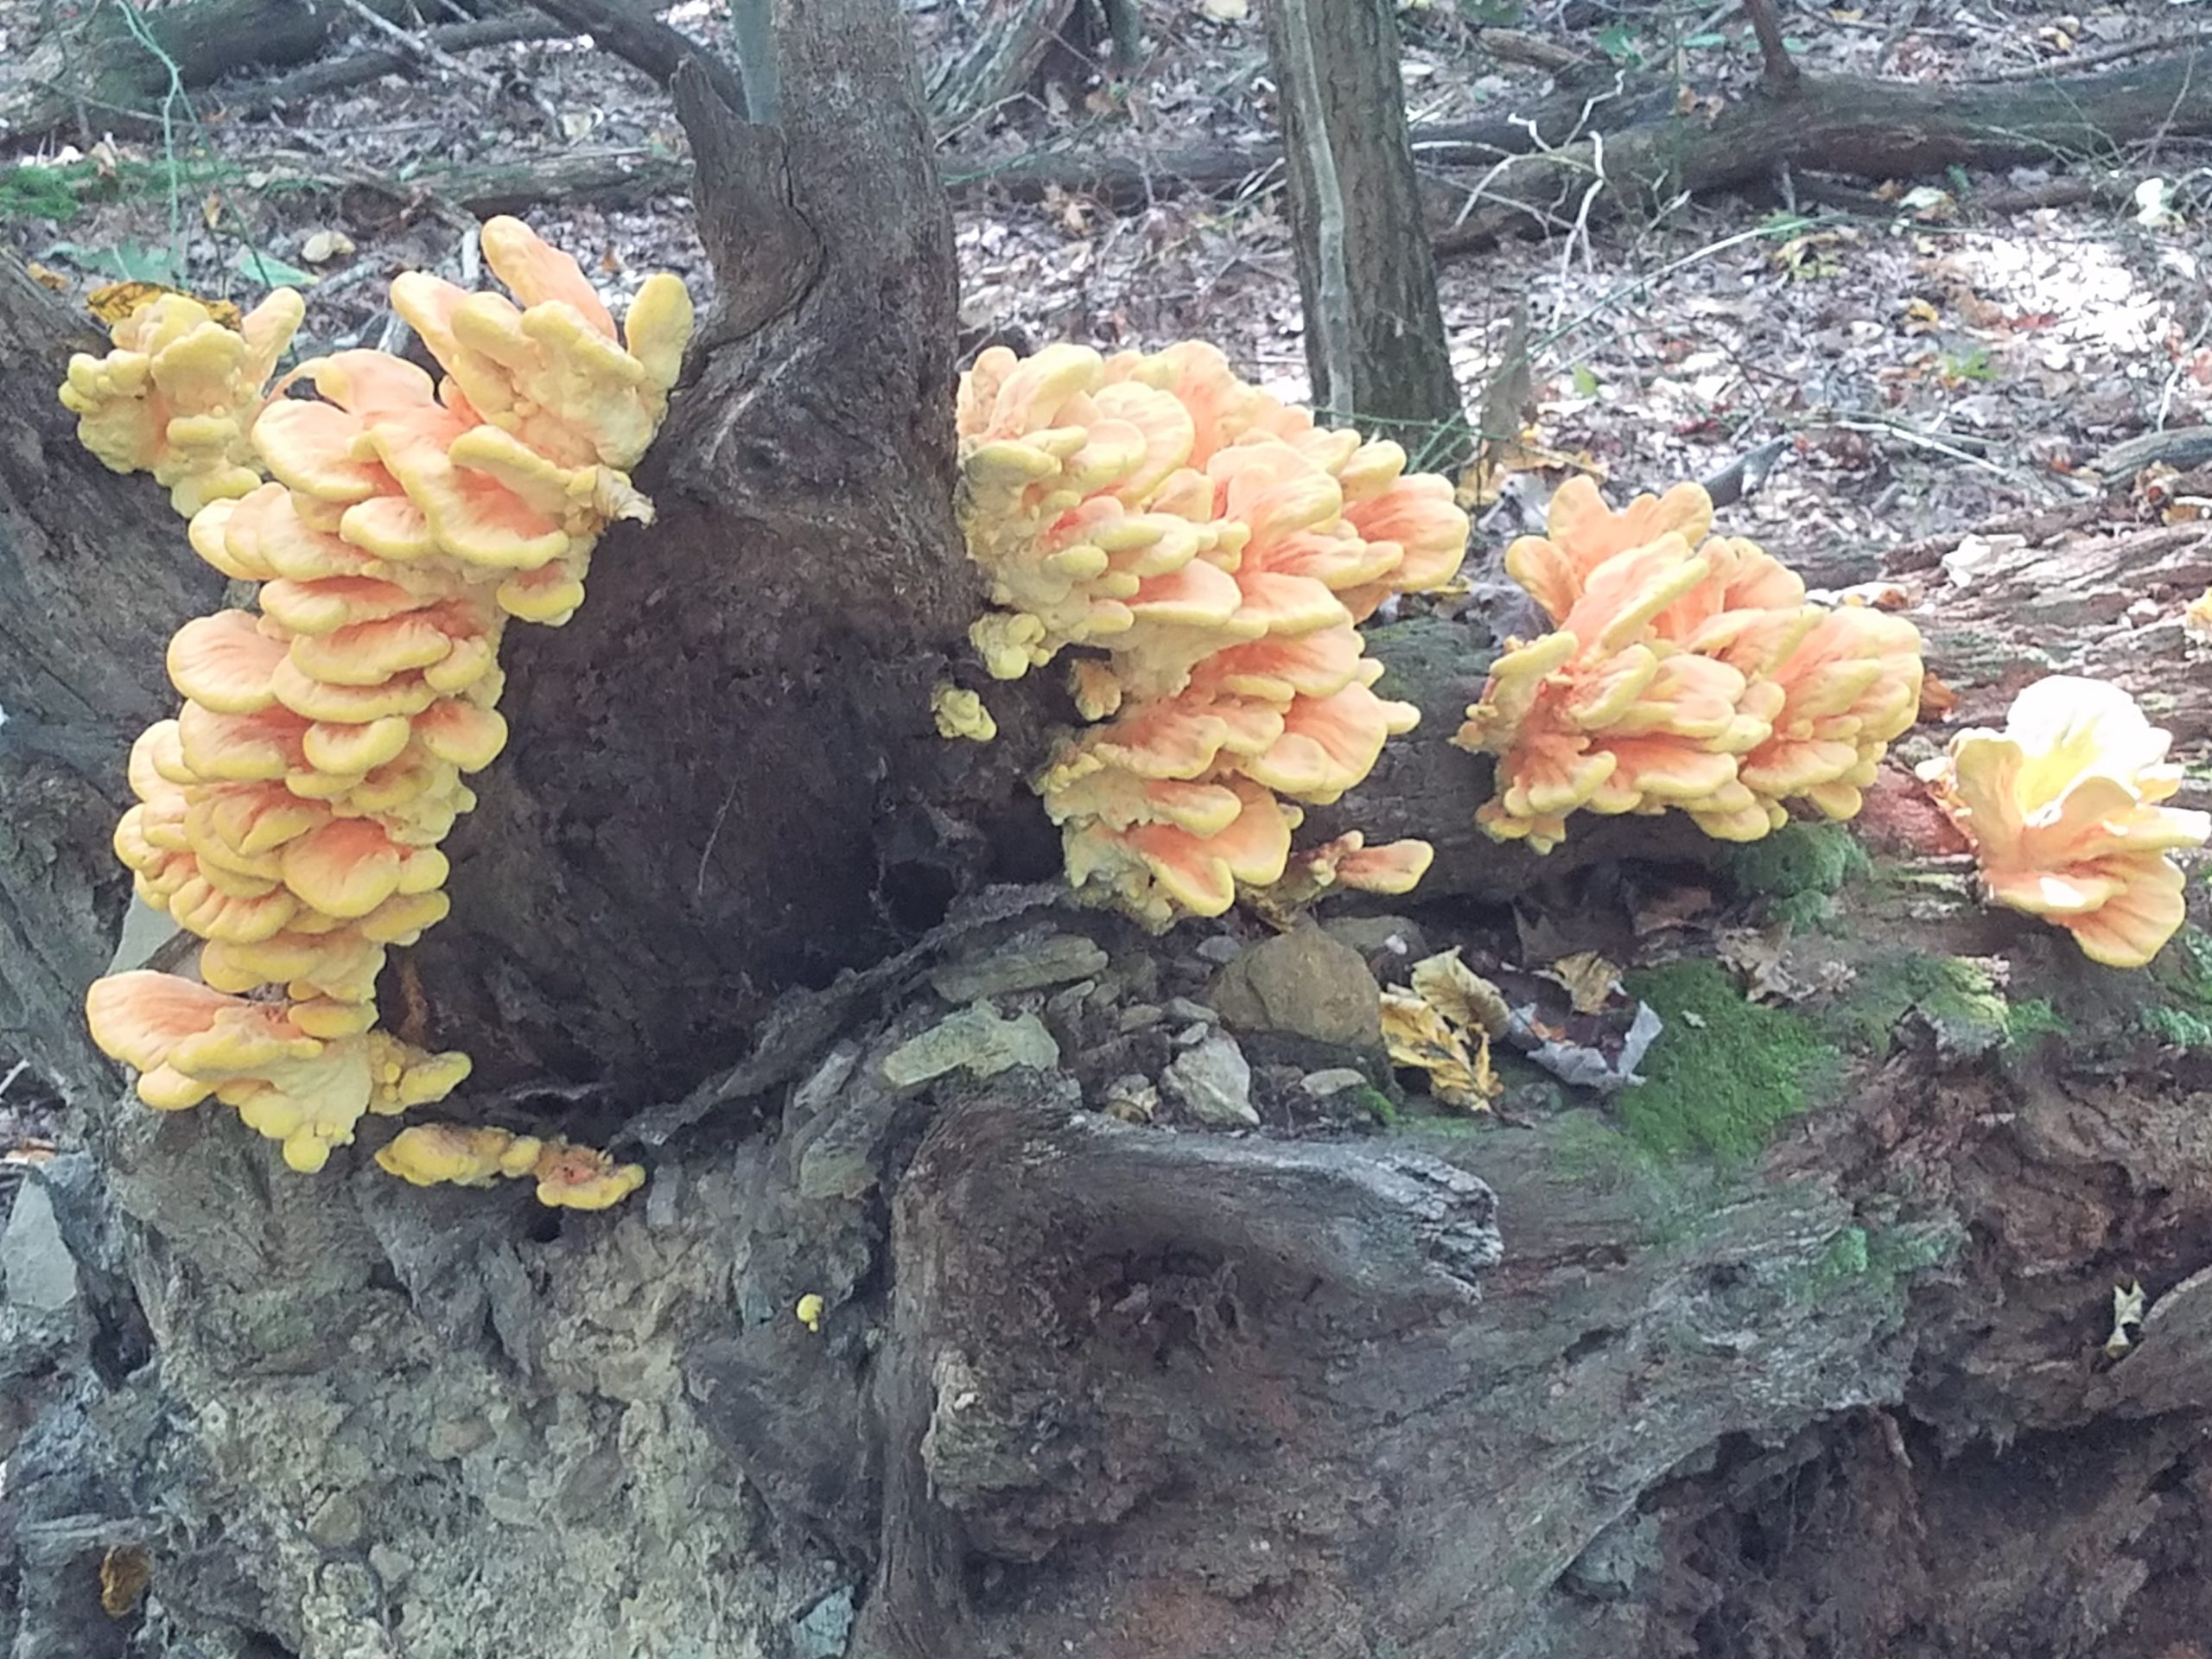 Beautiful yellow-orange fungi growing on a downed tree trunk.